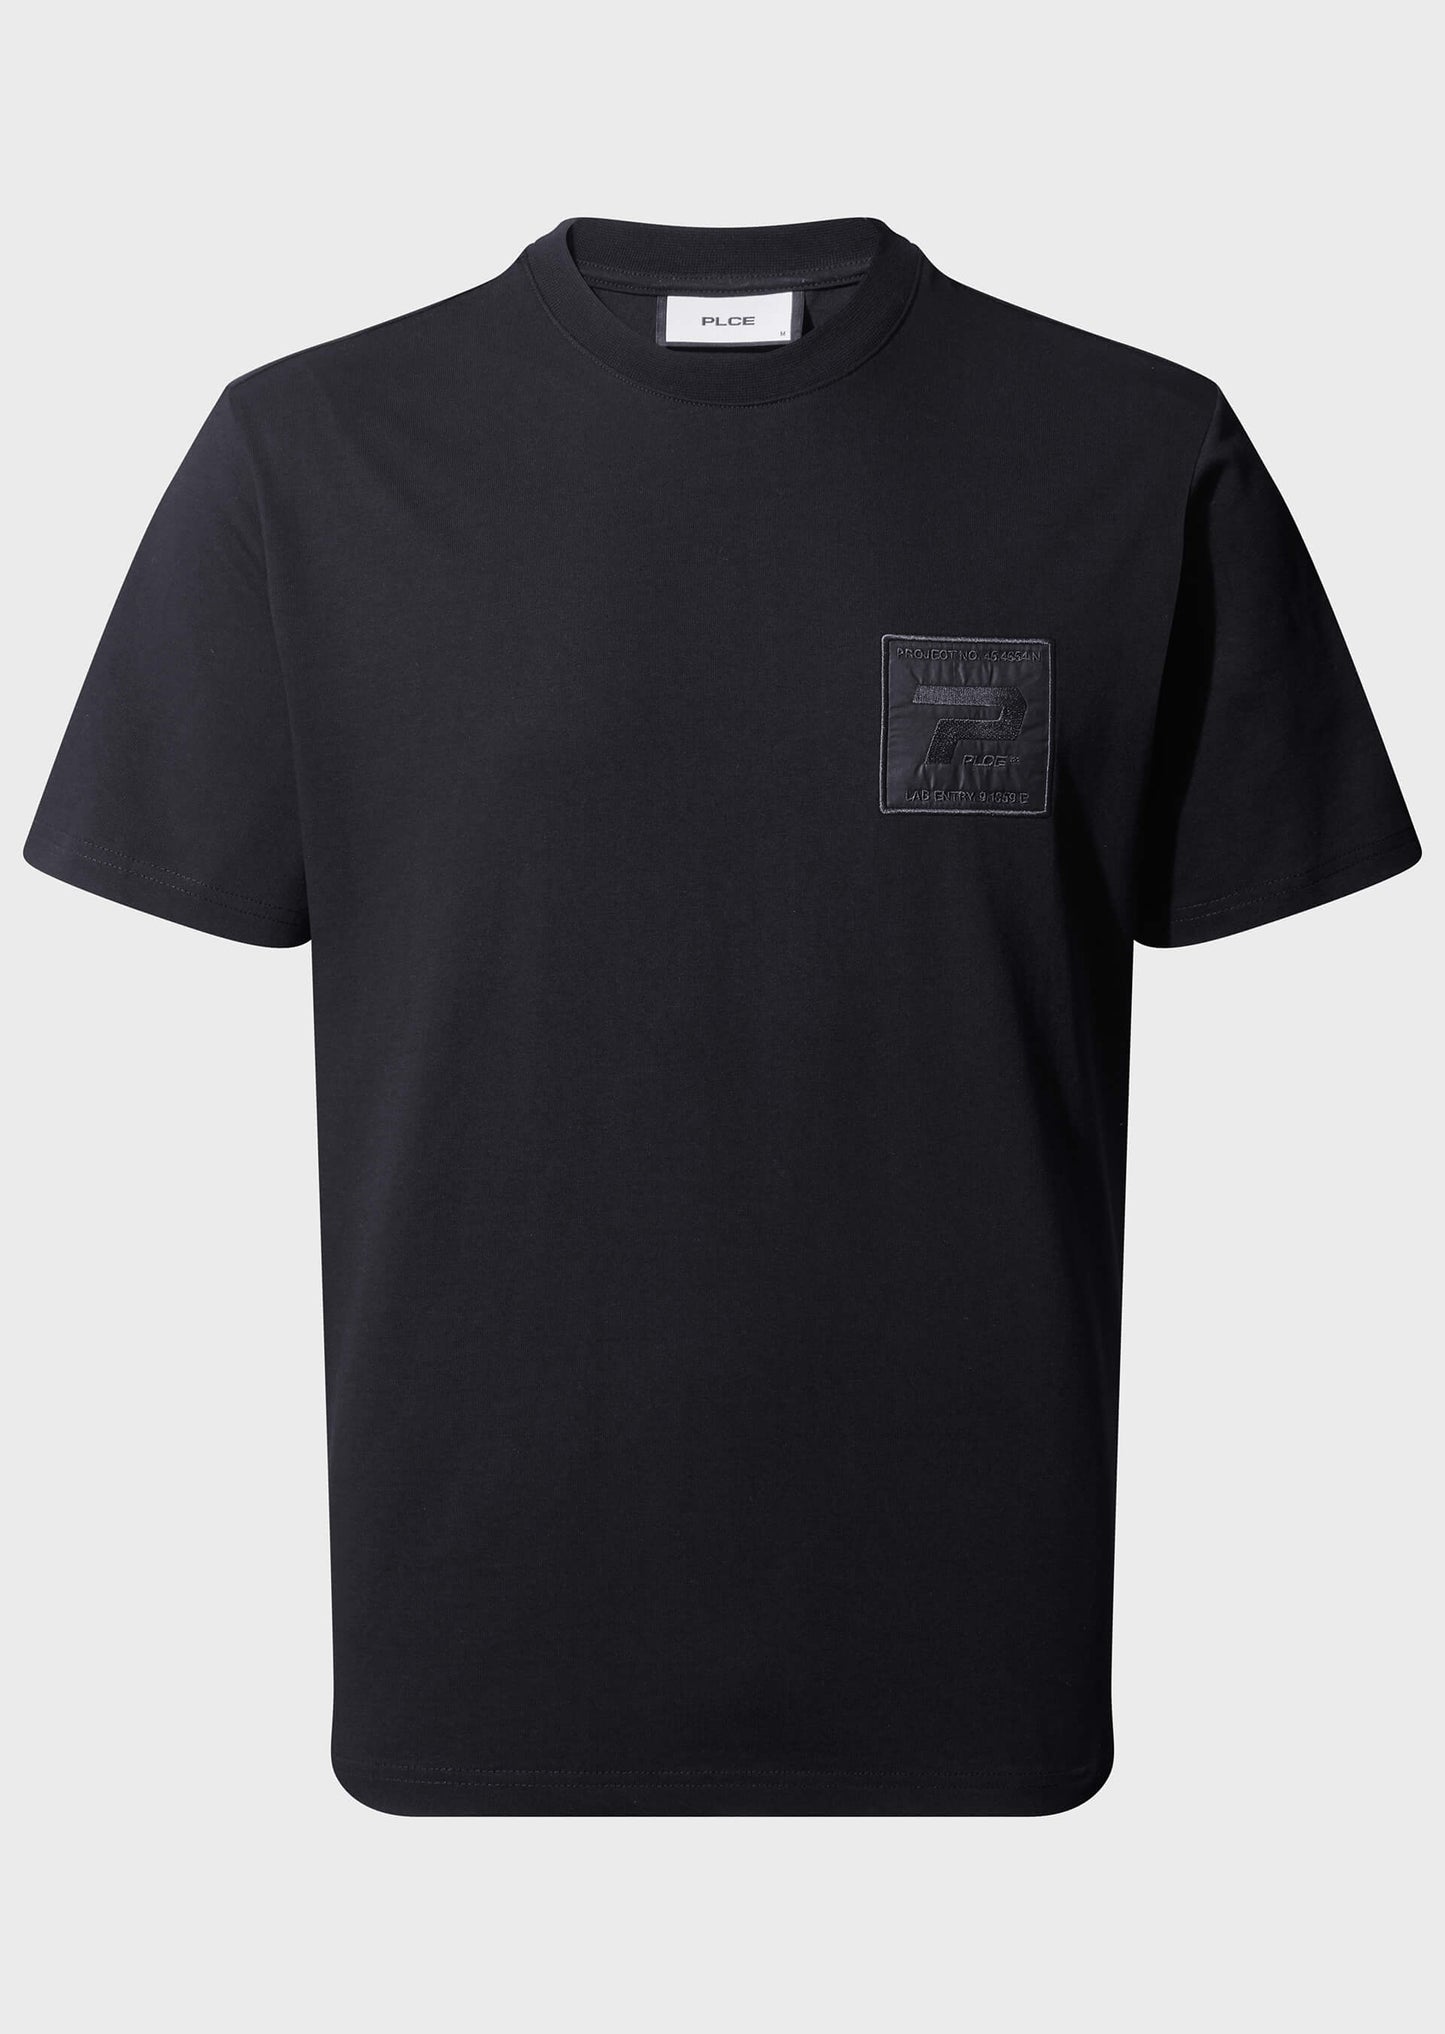 Famo Black T-Shirt